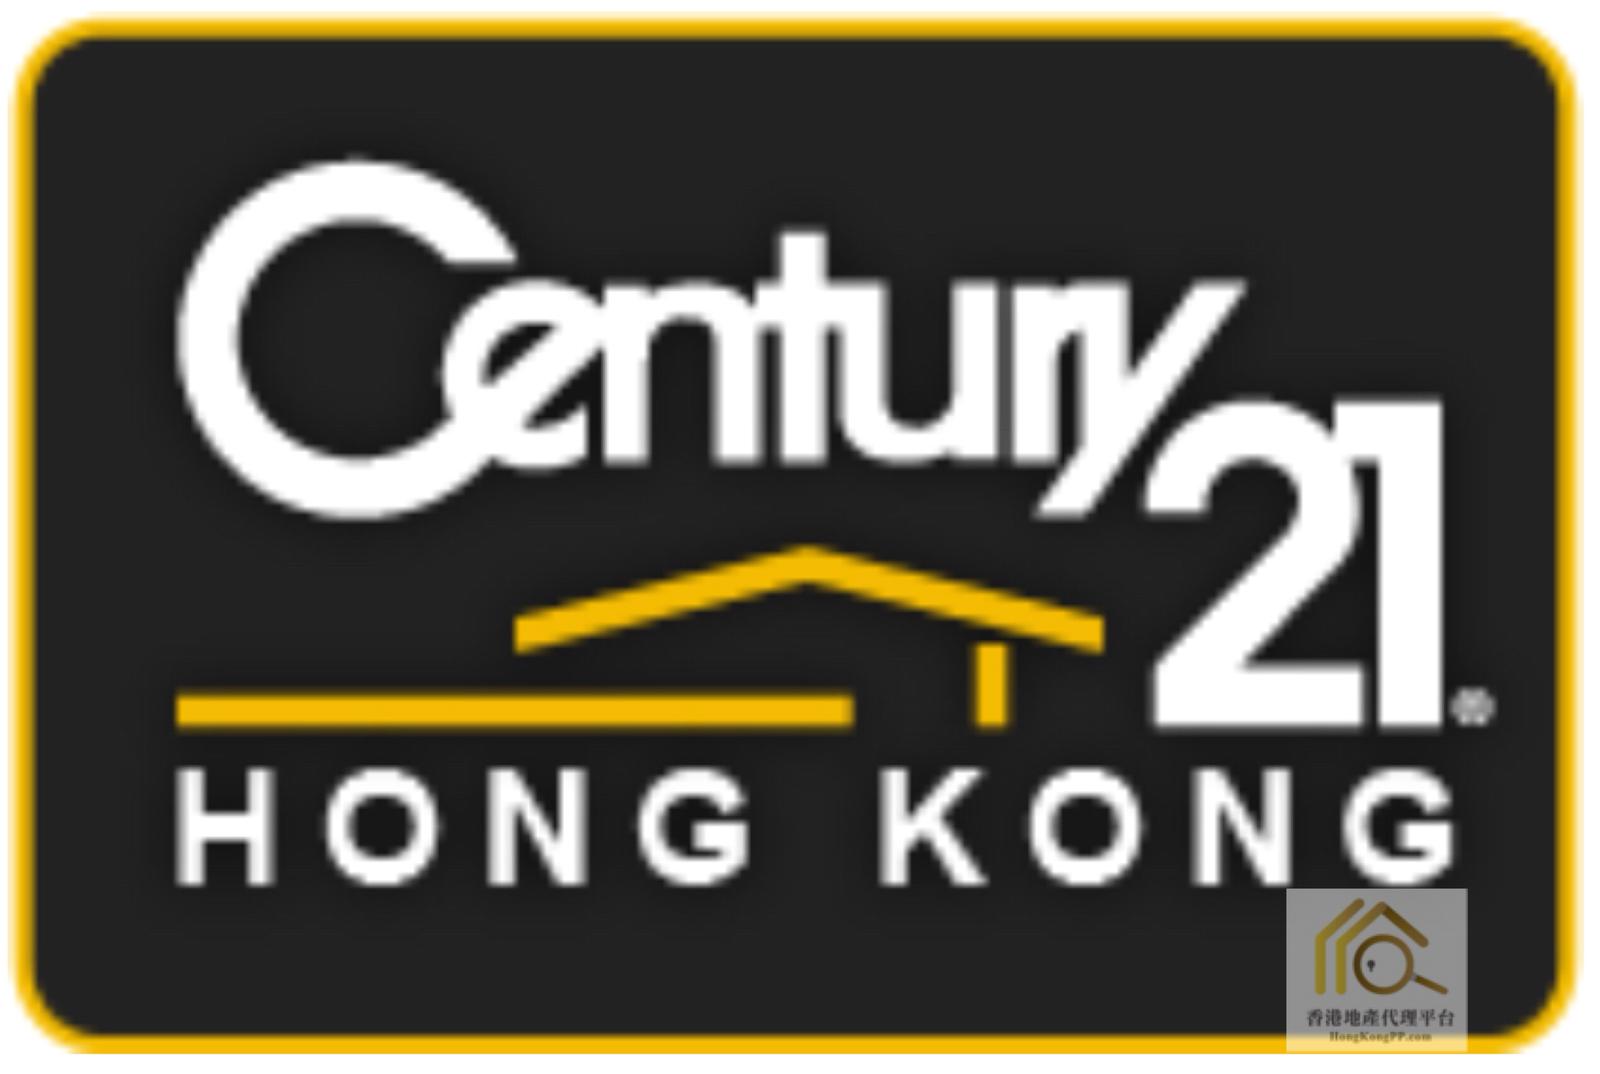 住宅地產代理:  世紀21 世紀21奇豐物業顧問行 (西貢分行)